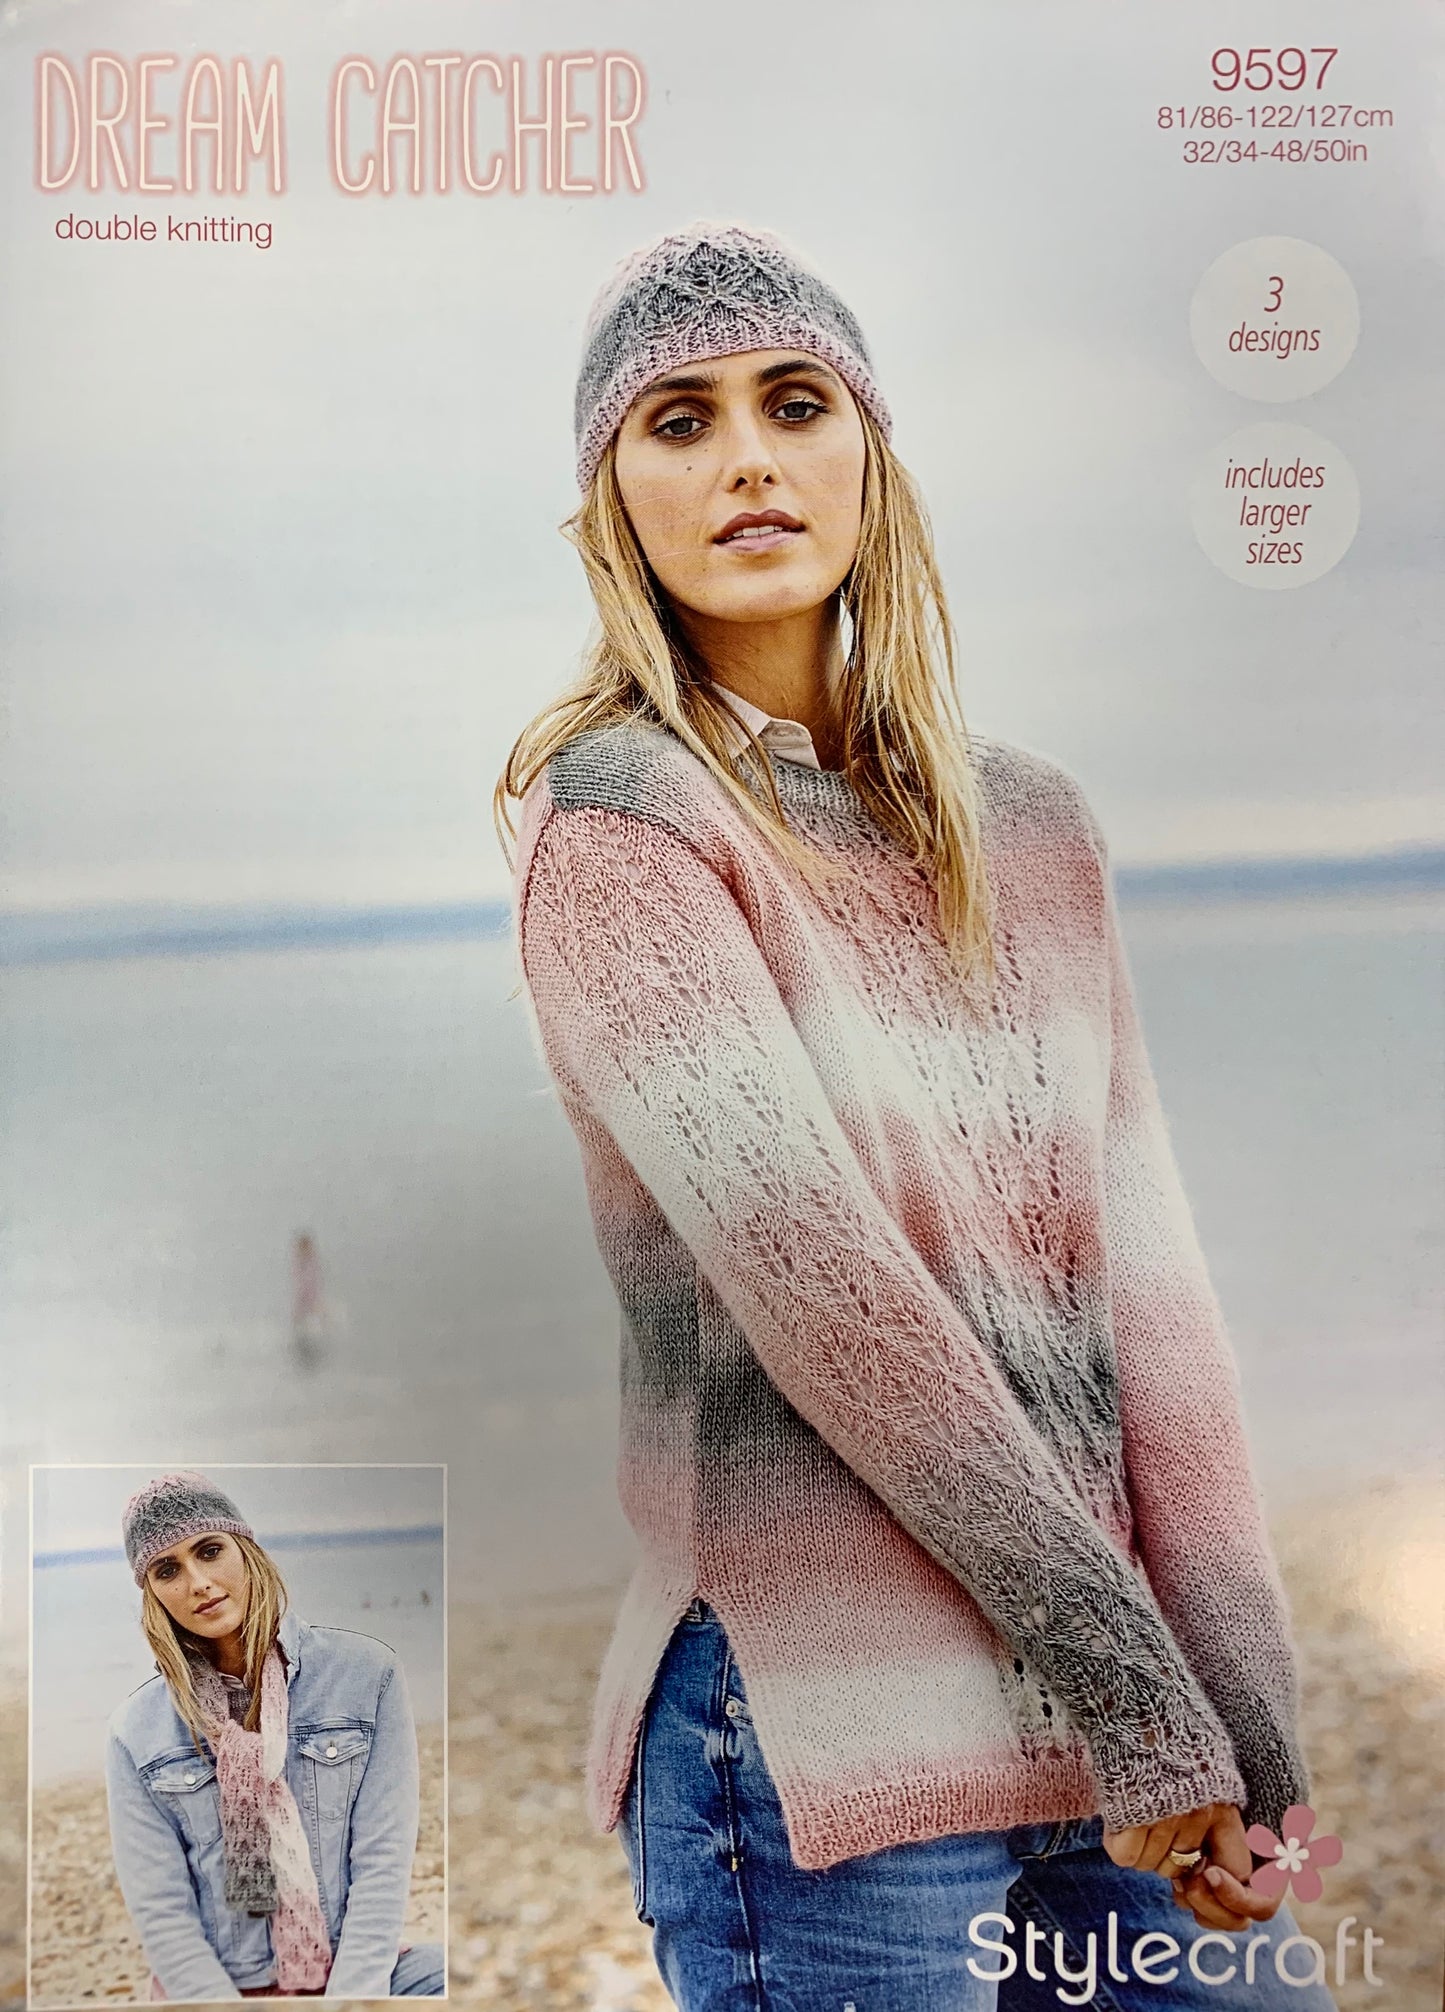 9597 Stylecraft Dream Catcher dk ladies sweater, scarf and hat knitting pattern